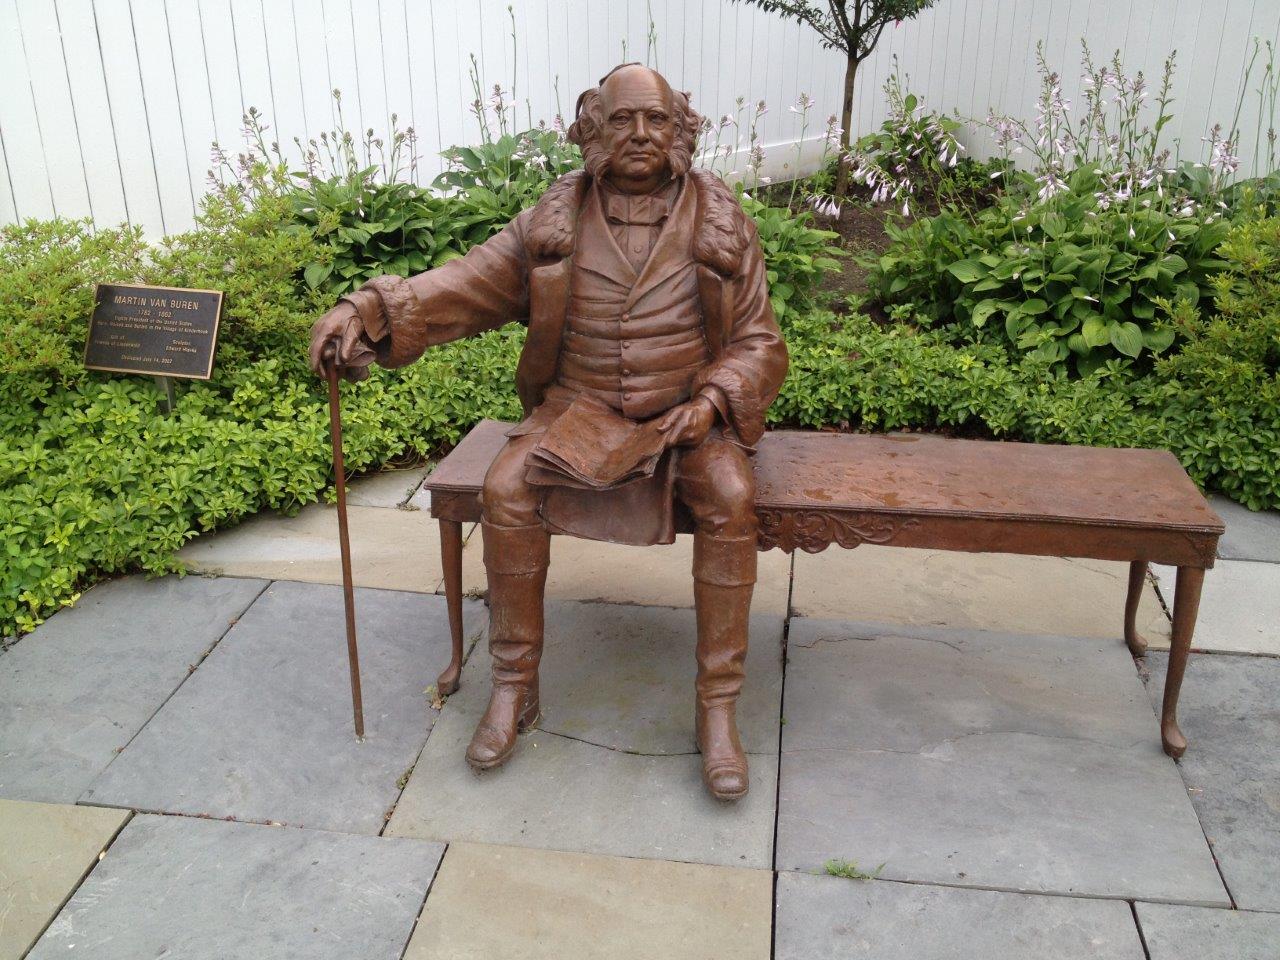 Martin Van Buren statue in Kinderhook, NY